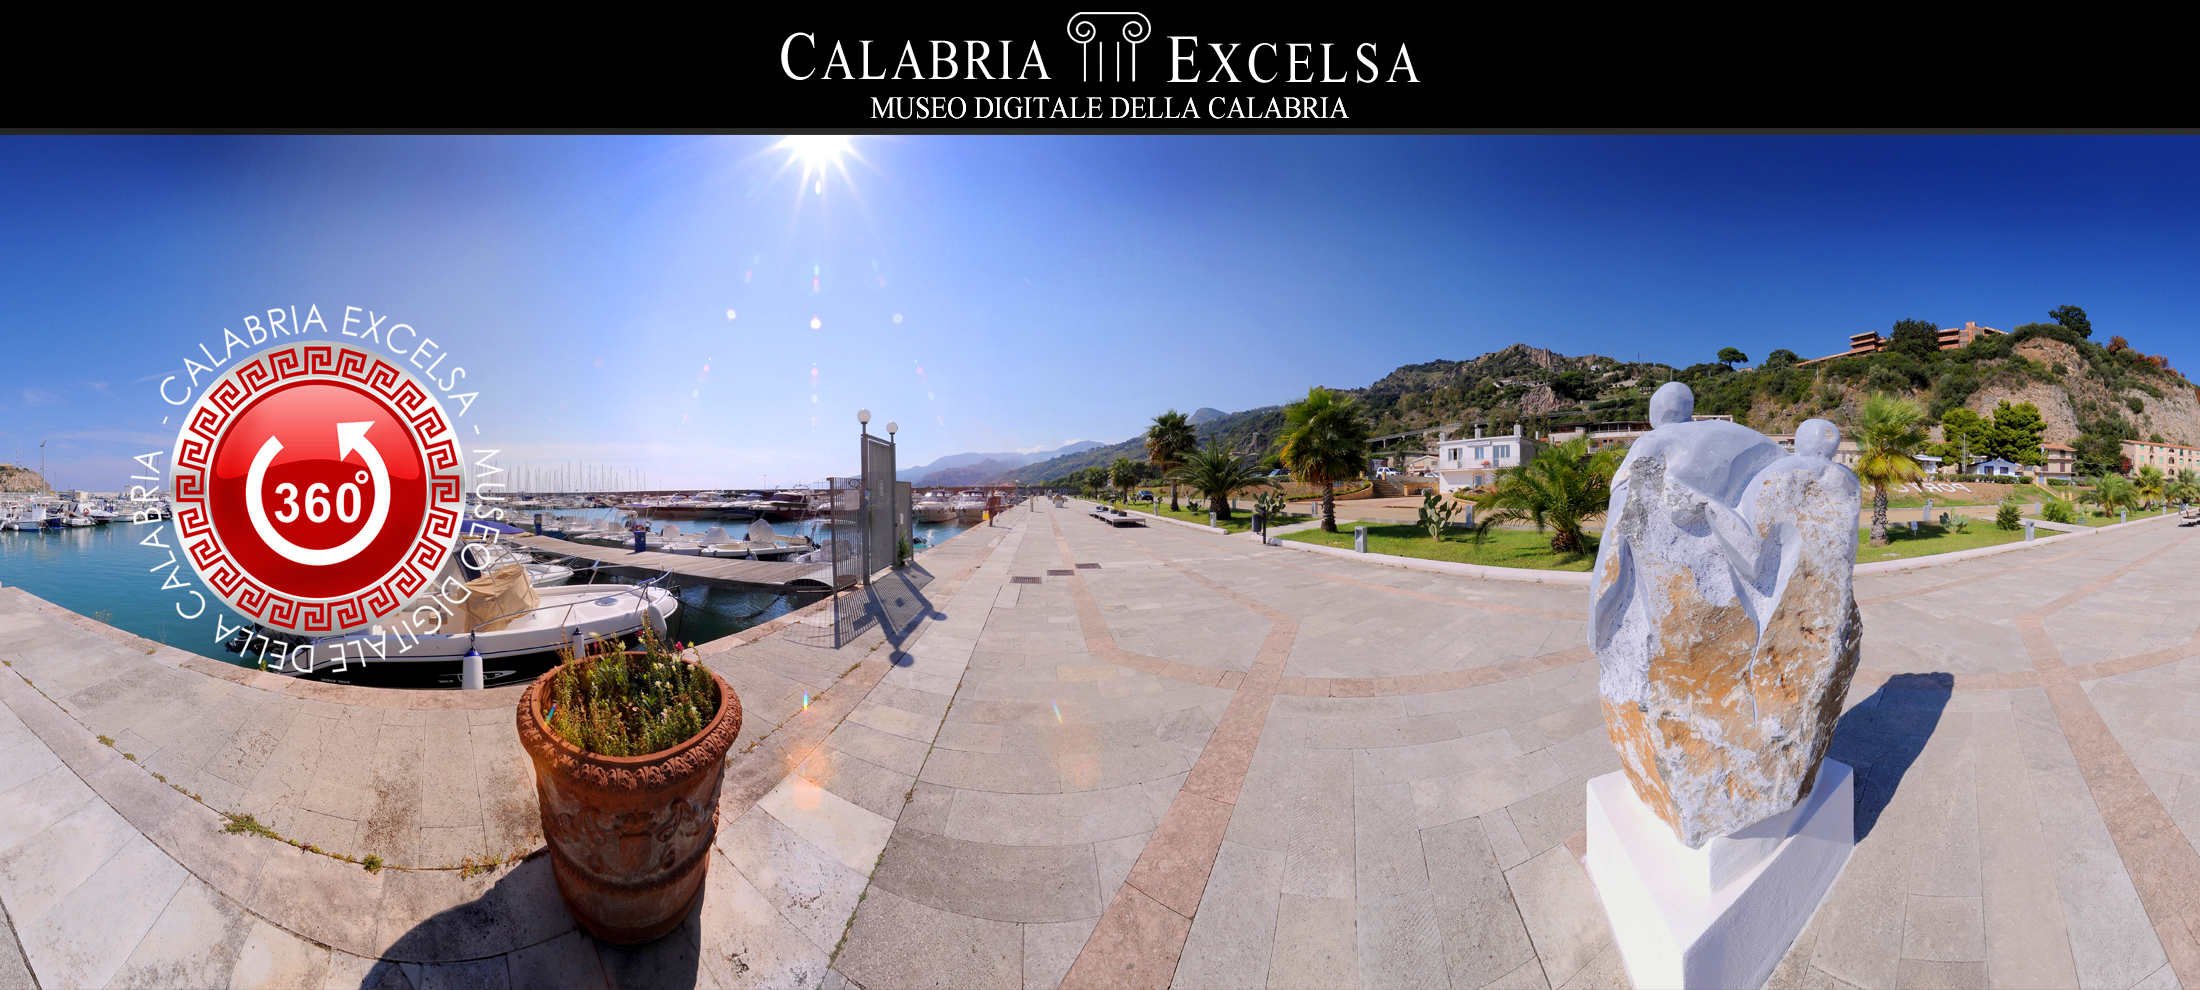 Museo Digitale della Calabria CALABRIAEXCELSA - Museo dei Brettii e del Mare di Cetraro - il Porto - Virtual 5